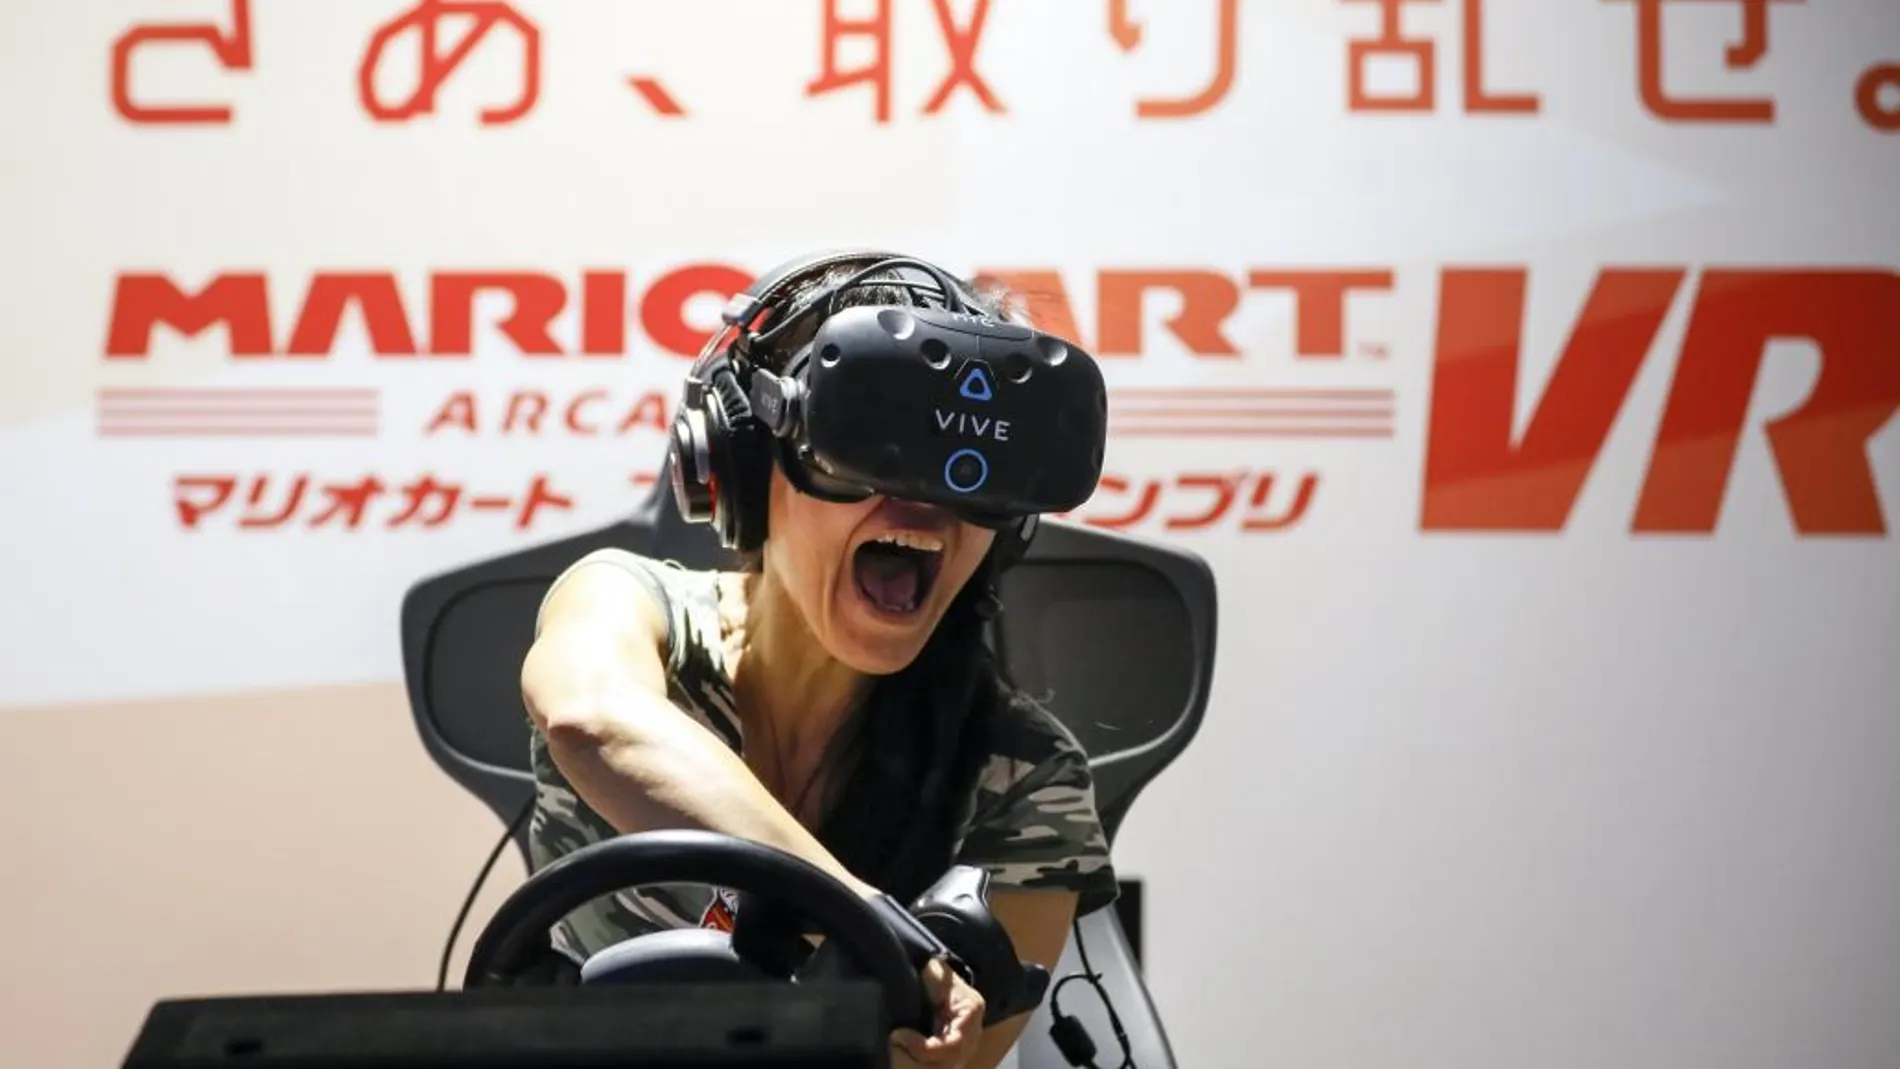 Una visitante grita mientras juega al Mariokart VR con unas gafas de realidad virtual VR goggle-type en el VR ZONE SHINJUKU, el mayor centro de realidad virtual de Japón, en Tokio. El centro, diseñado por Bandai Namco Entertainment Inc. abrió sus puertas el 14 de julio y ofrece 15 experiencias virtuales